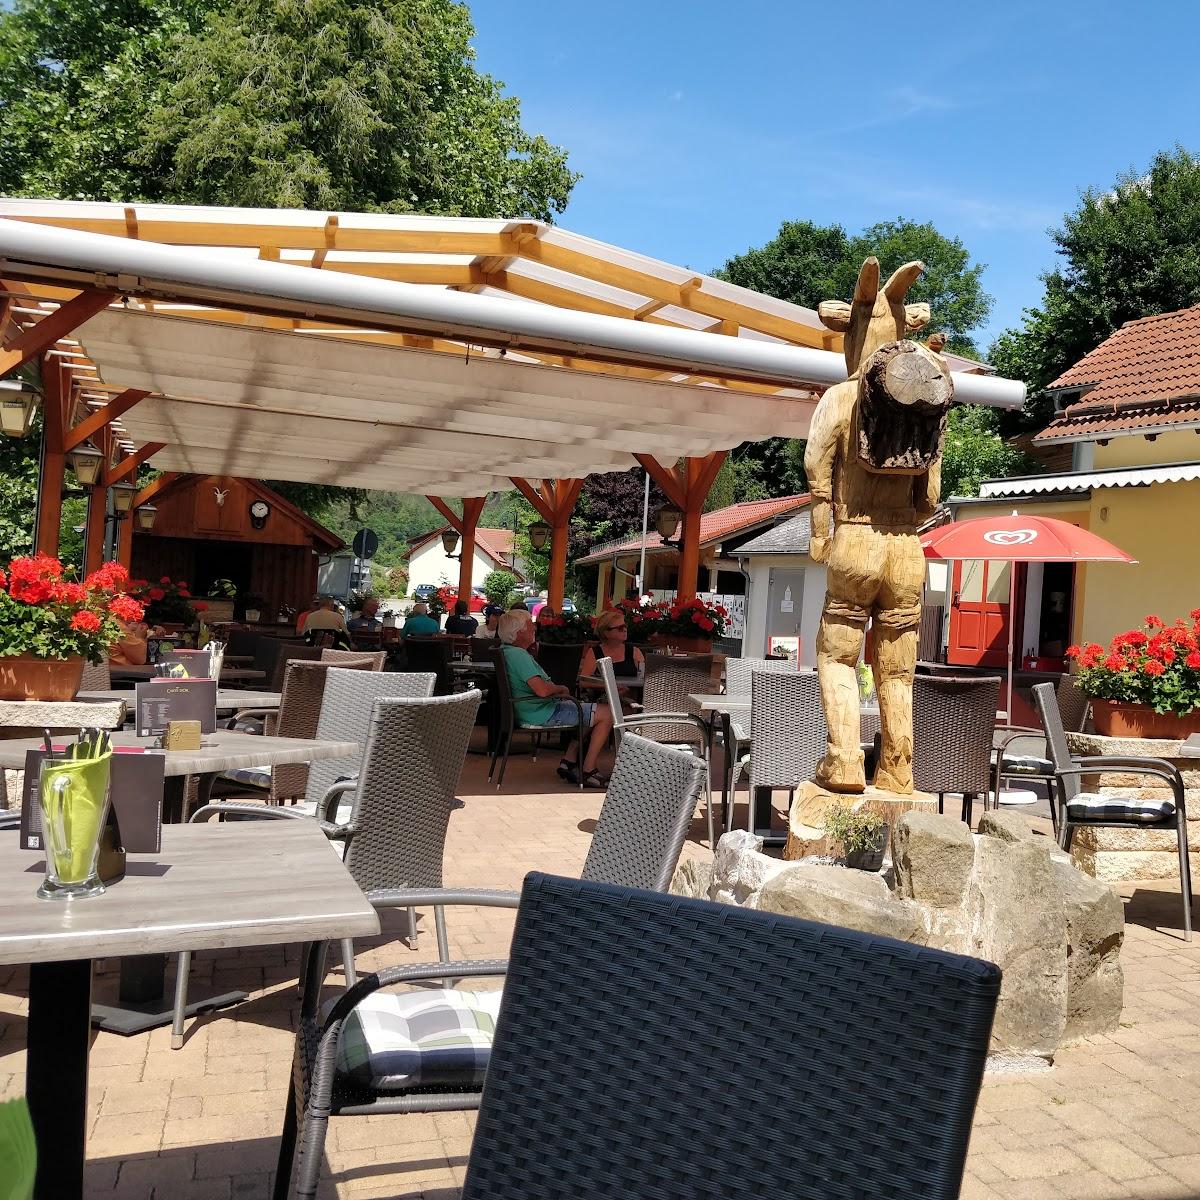 Restaurant "Zur Fernmühle" in Ziegenrück